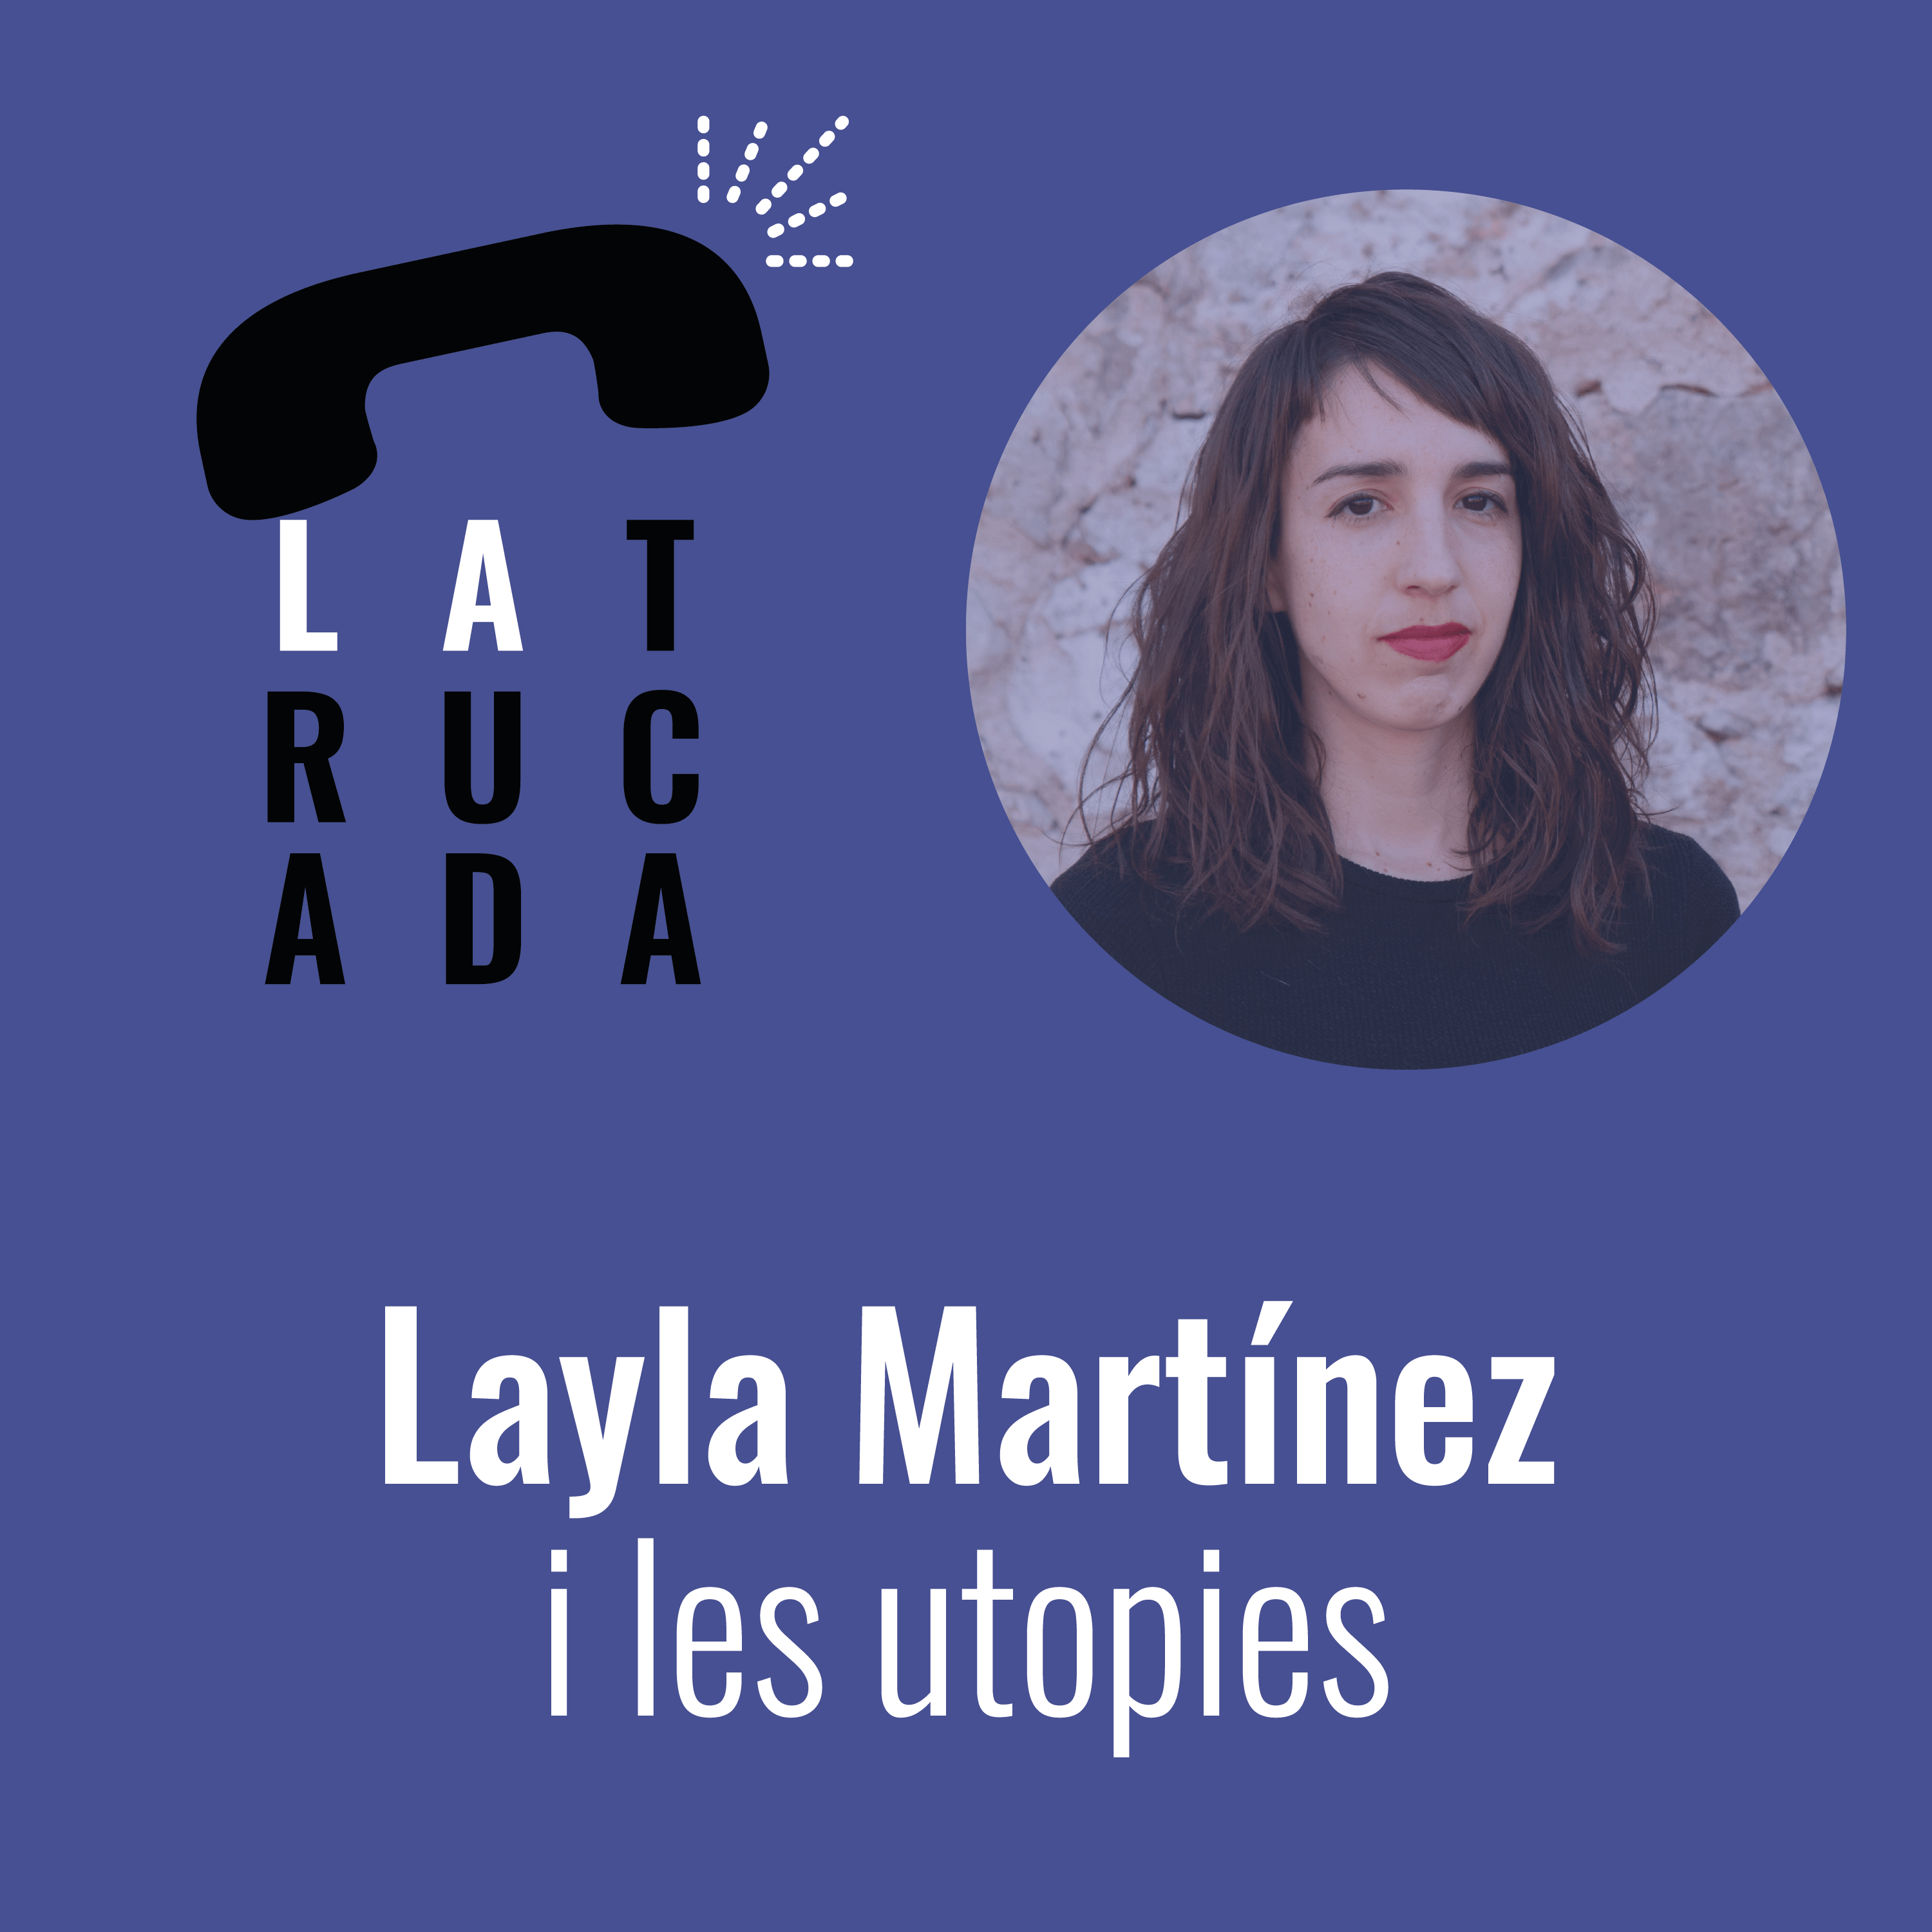 Layla Martínez i les utopies